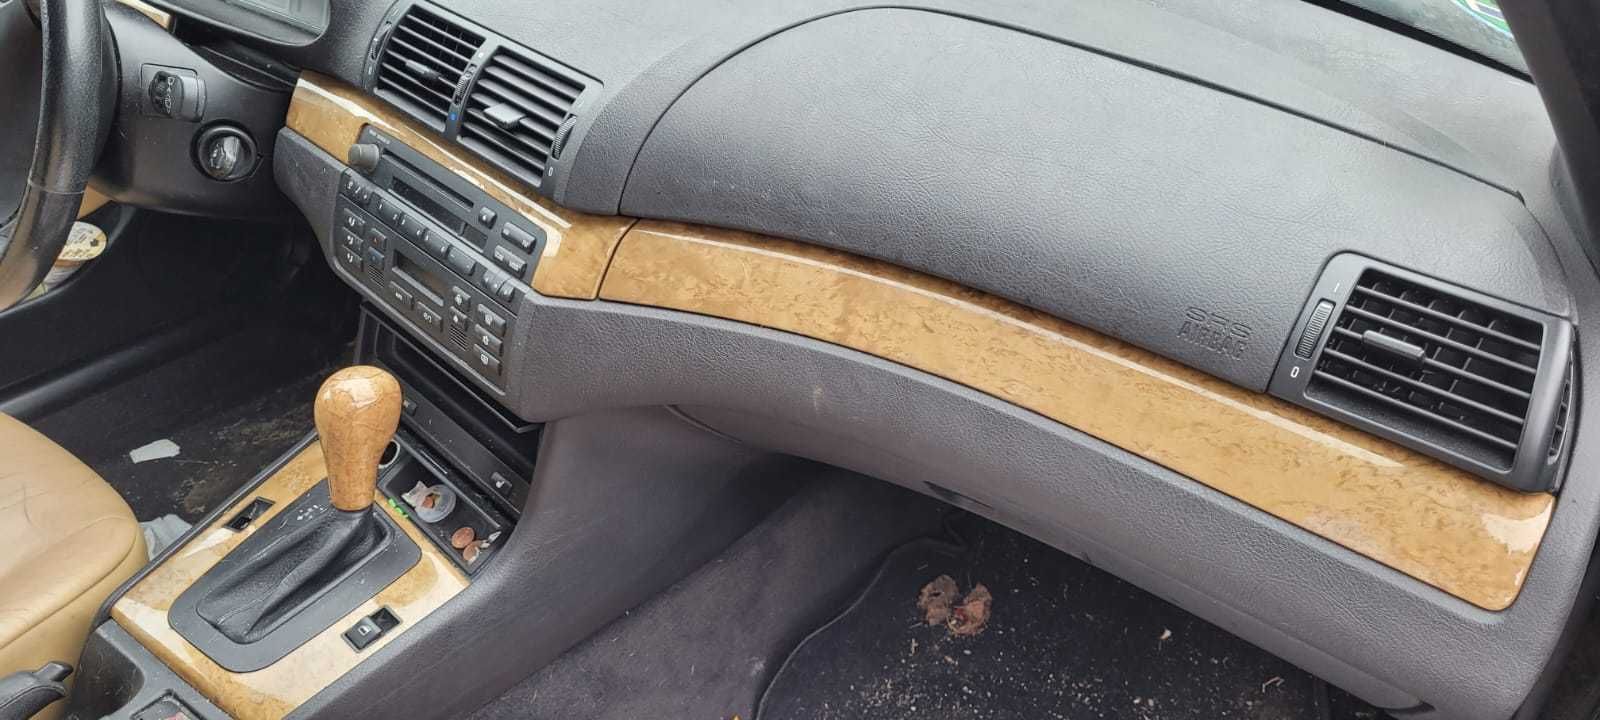 Dekory listwy ozdobne indyvidual BMW E46 drewno